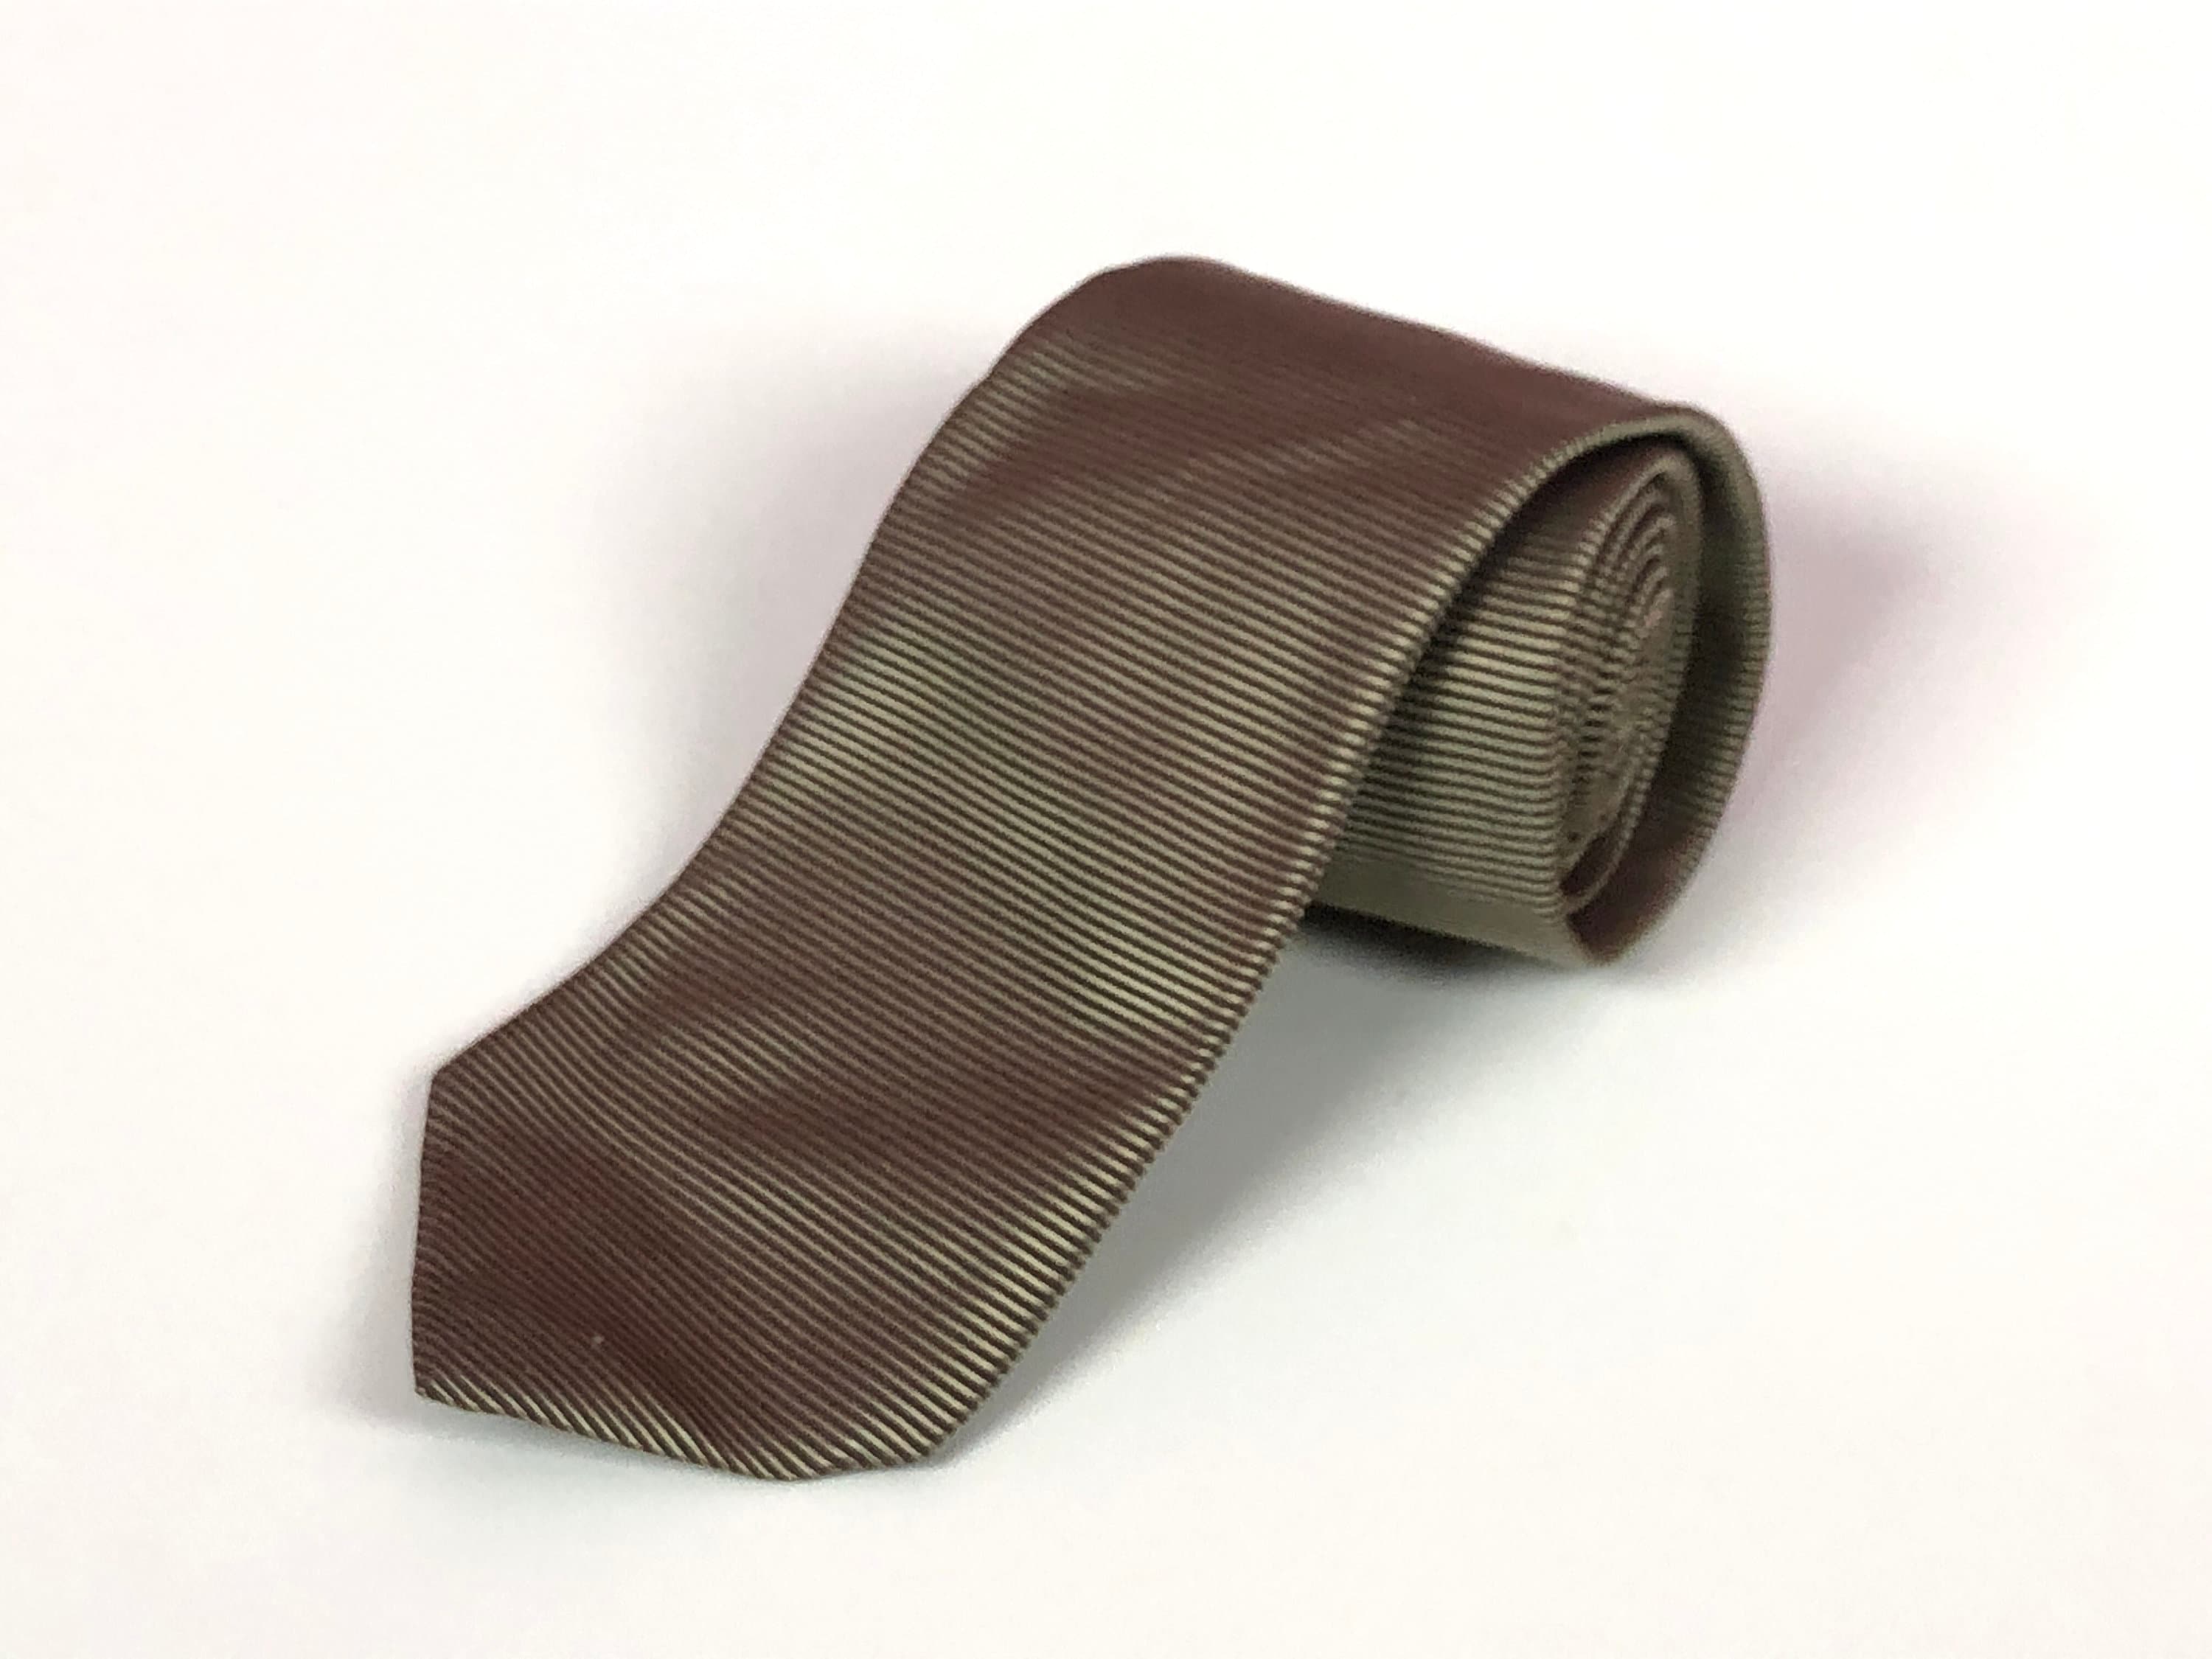 Hugo Boss Cravate Vintage Beige Striped Necktie Retro Silk Tie - Etsy